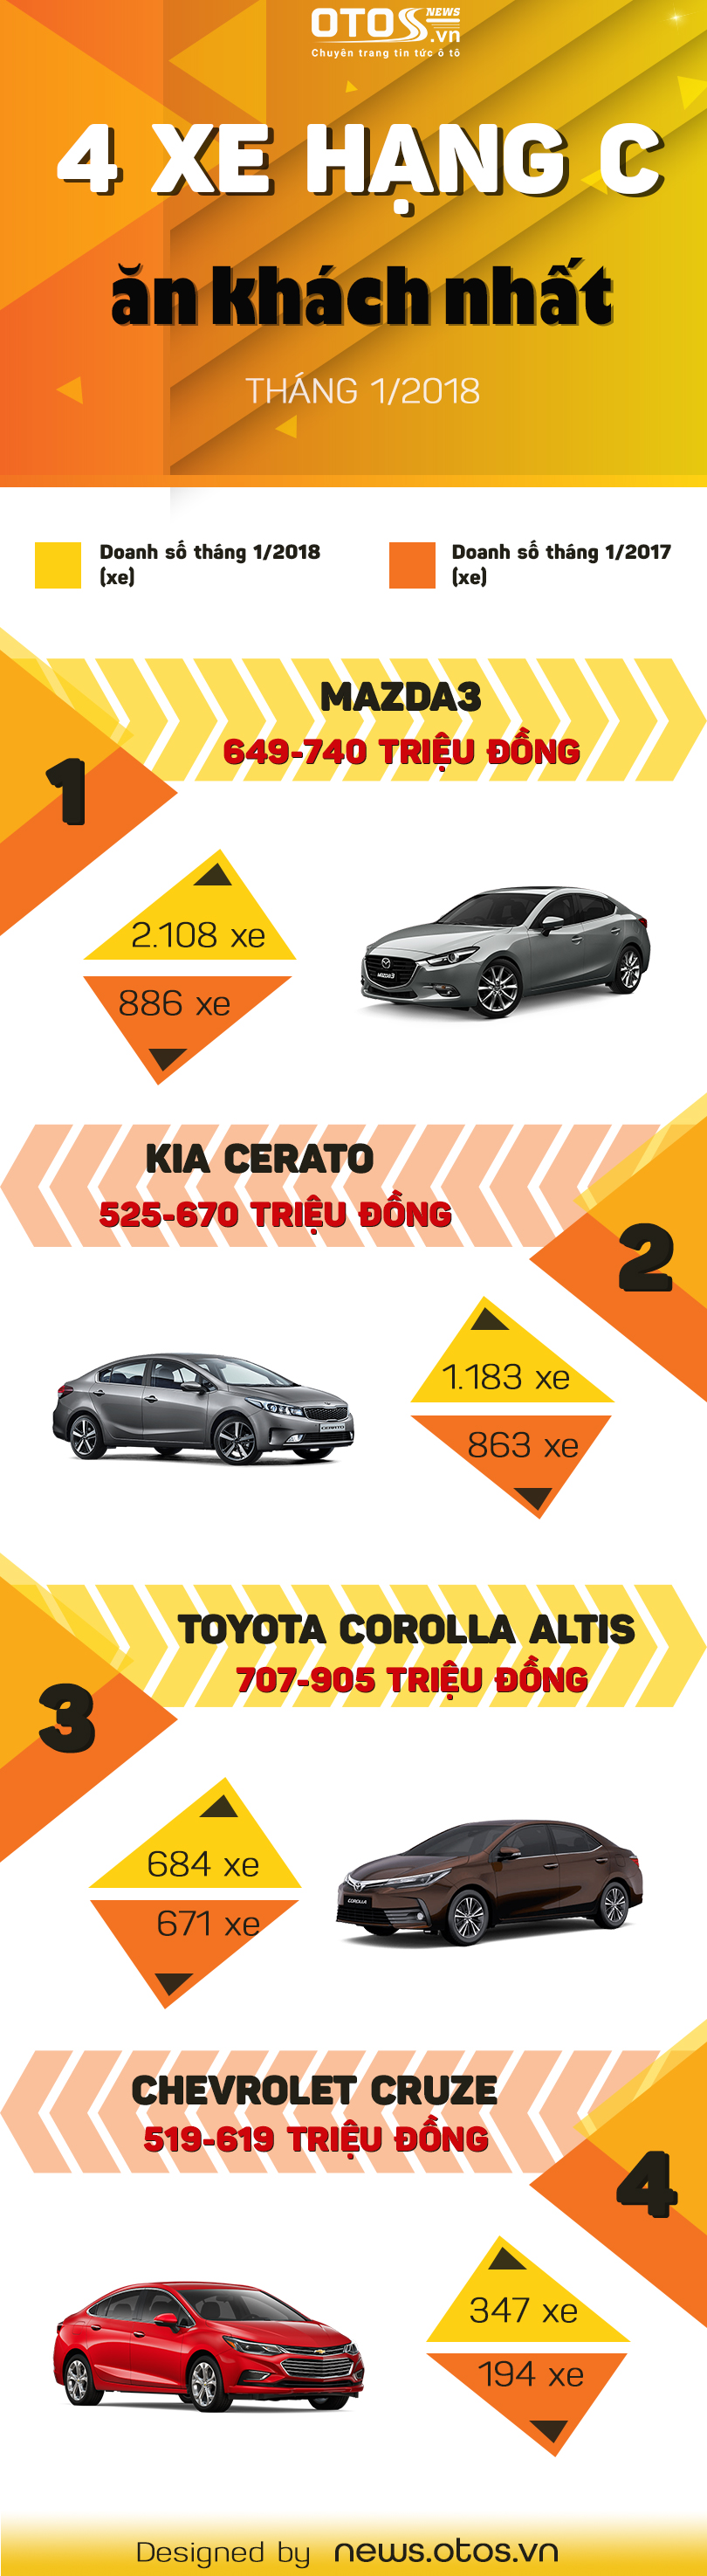 Xe hạng C nào ăn khách nhất thị trường Việt đầu năm 2018?